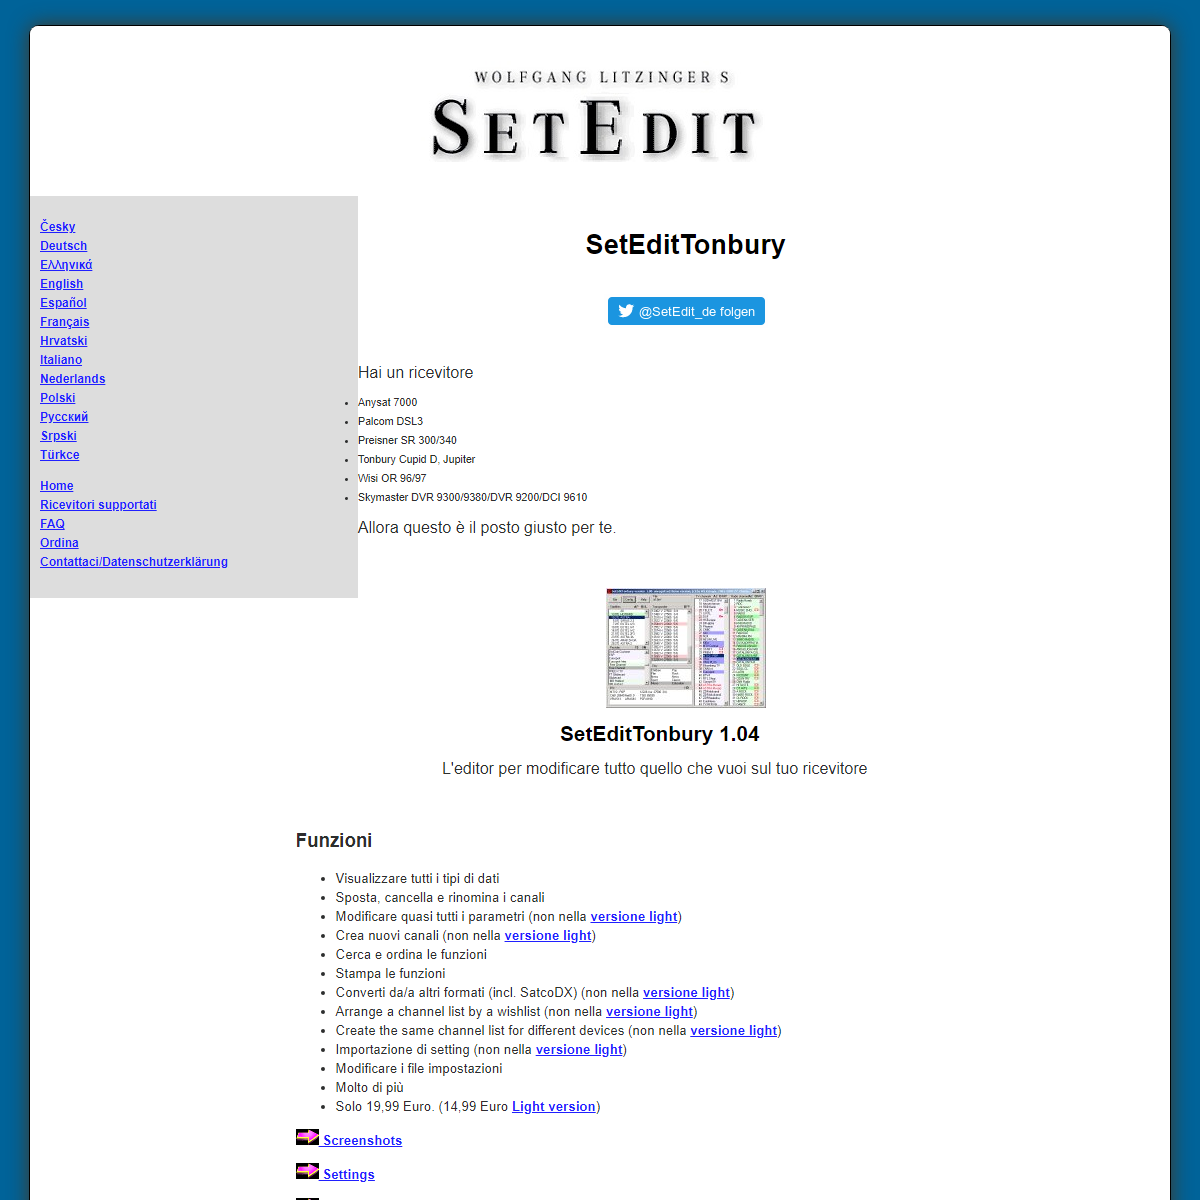 A complete backup of https://setedit.de/SetEdit.php?spr=6&Editor=33&device=Tonbury